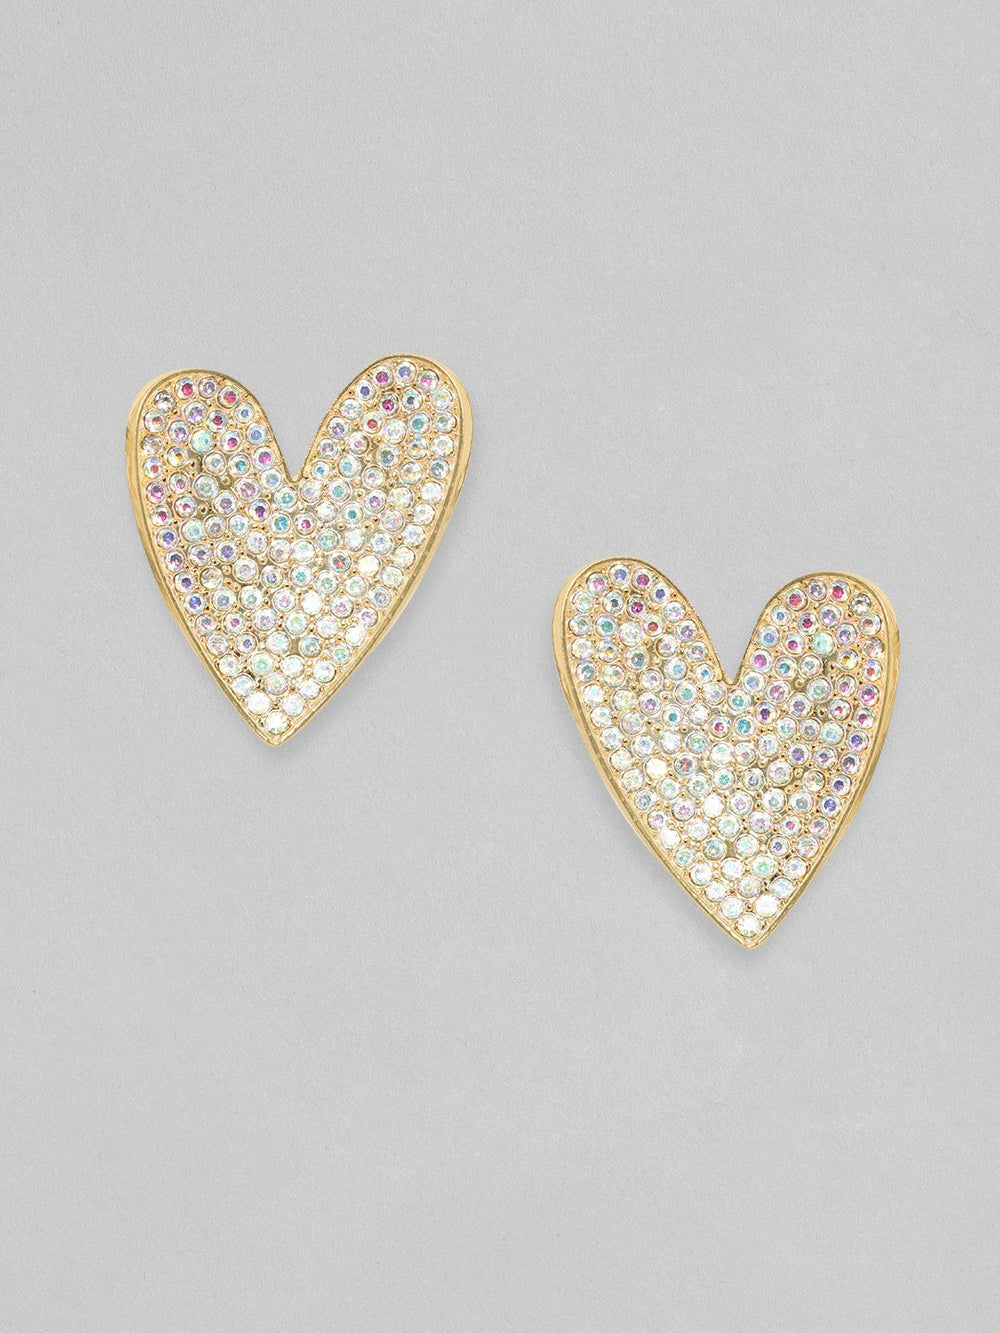 Rubans 18K Gold Toned White Zircons Studded Heart Stud Earring Earrings